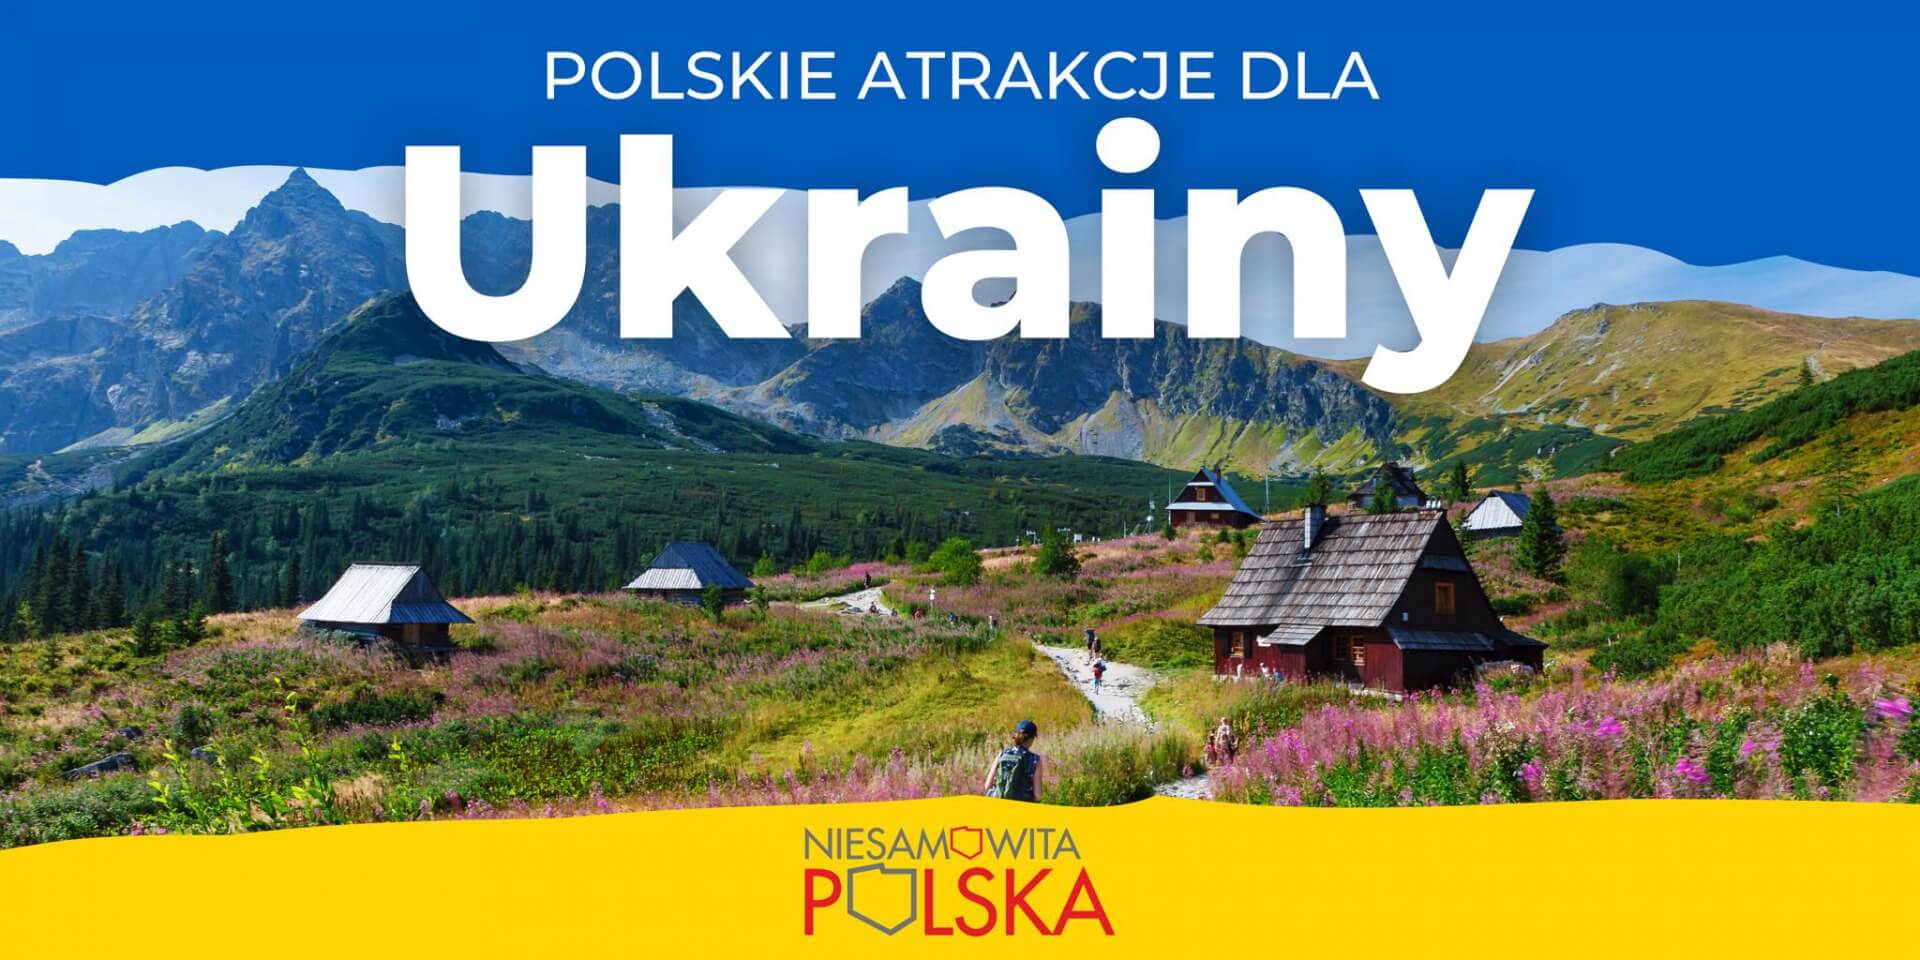 Polskie atrakcje dla Ukrainy